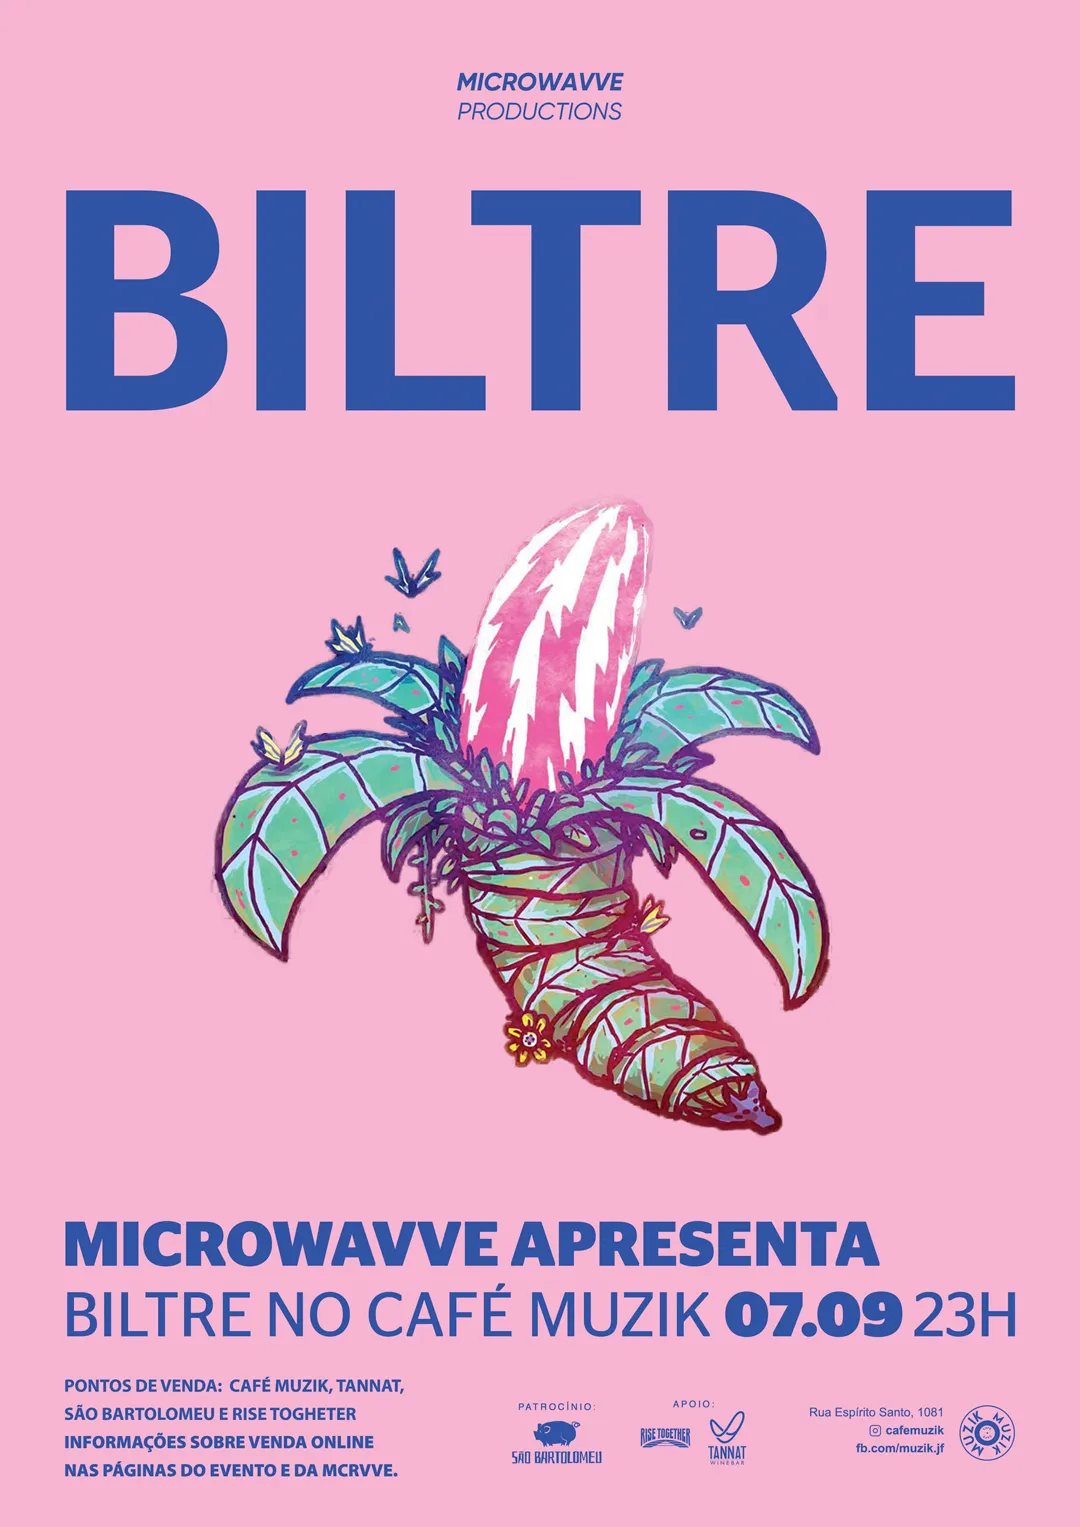 Microwavve Productions: BILTRE. Cartaz rosa com ilustração de uma banana esquisita feita pelo artista Daniel Sake.